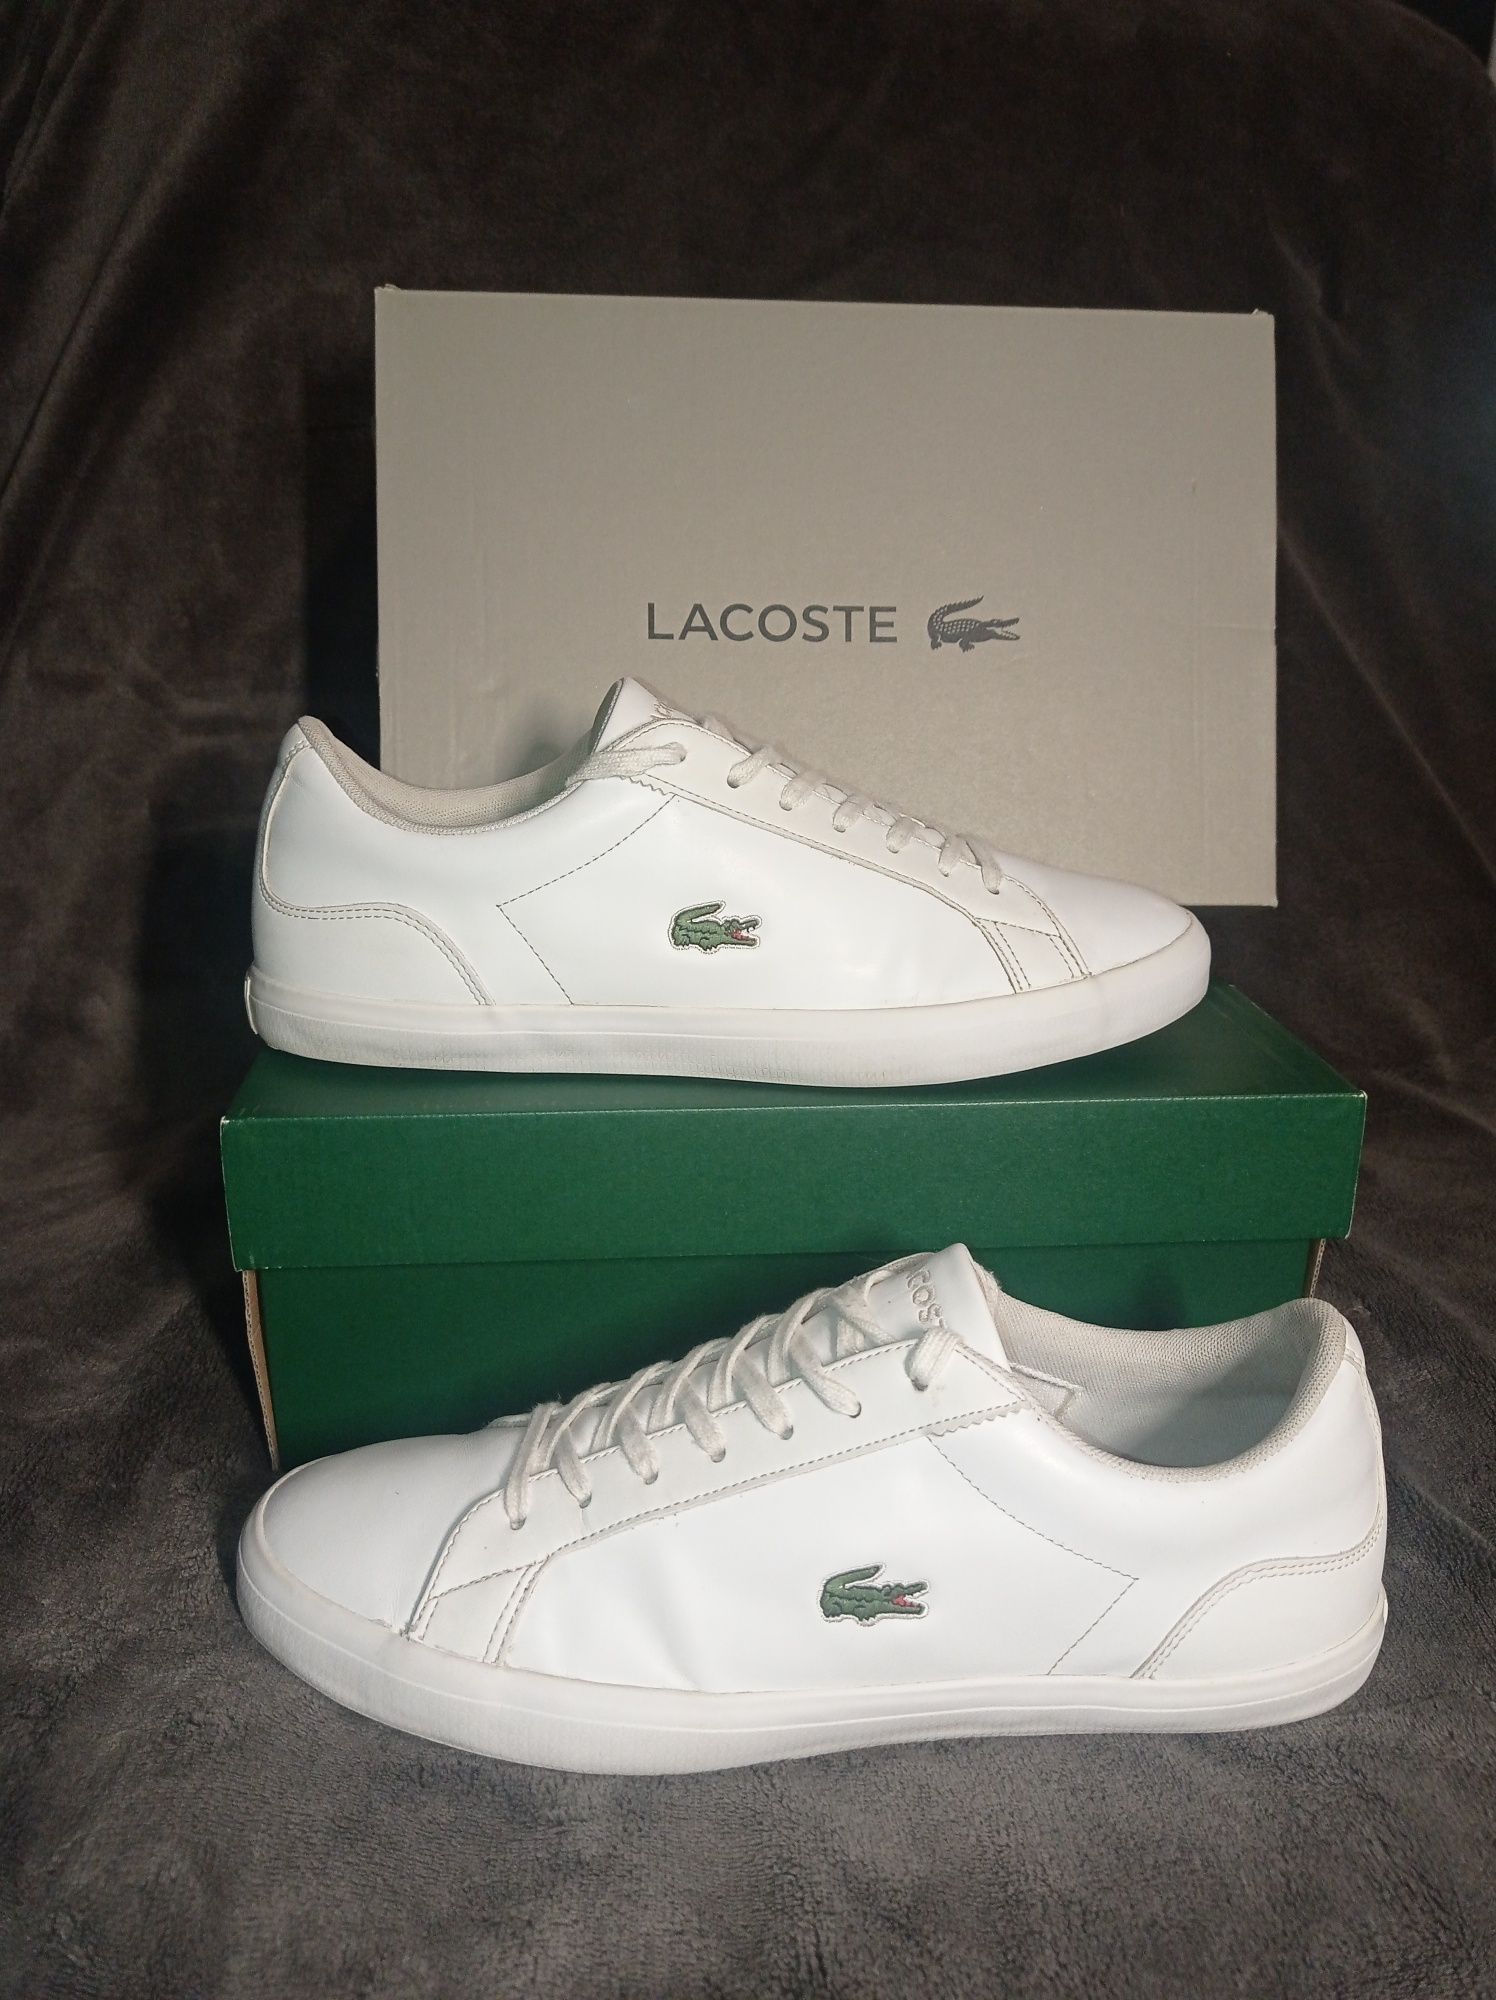 Buty Lacoste Lerond rozmiar 43 wkładka 27,5 cm białe trampki skórzane